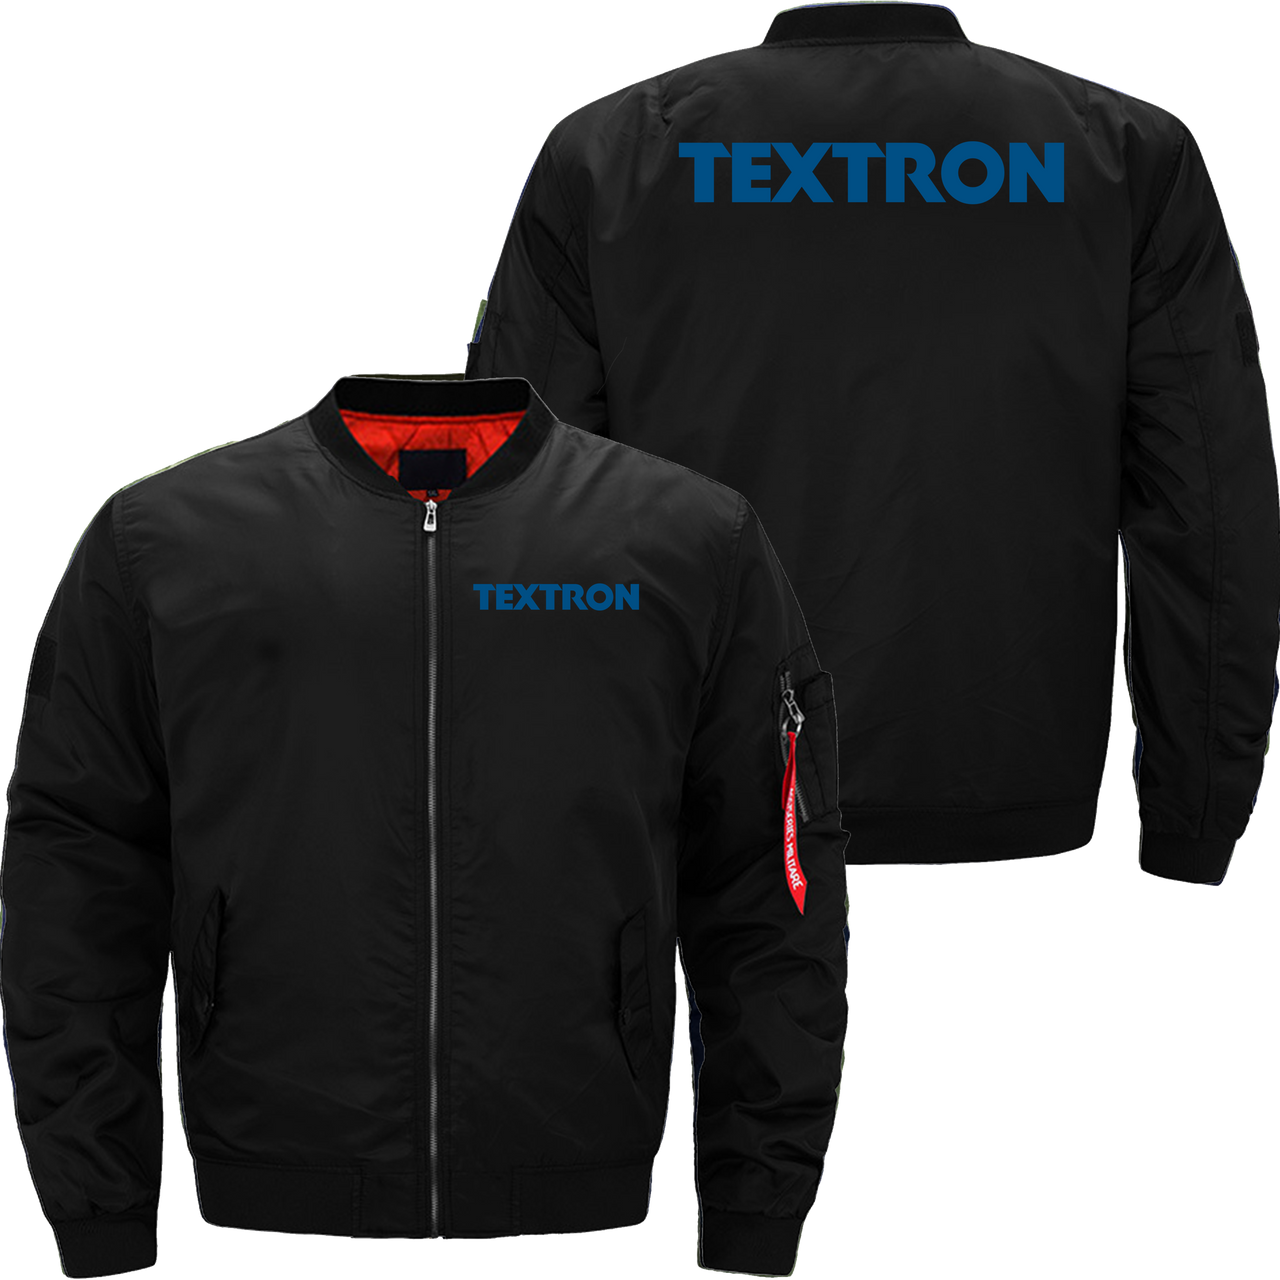 Textron Jacket